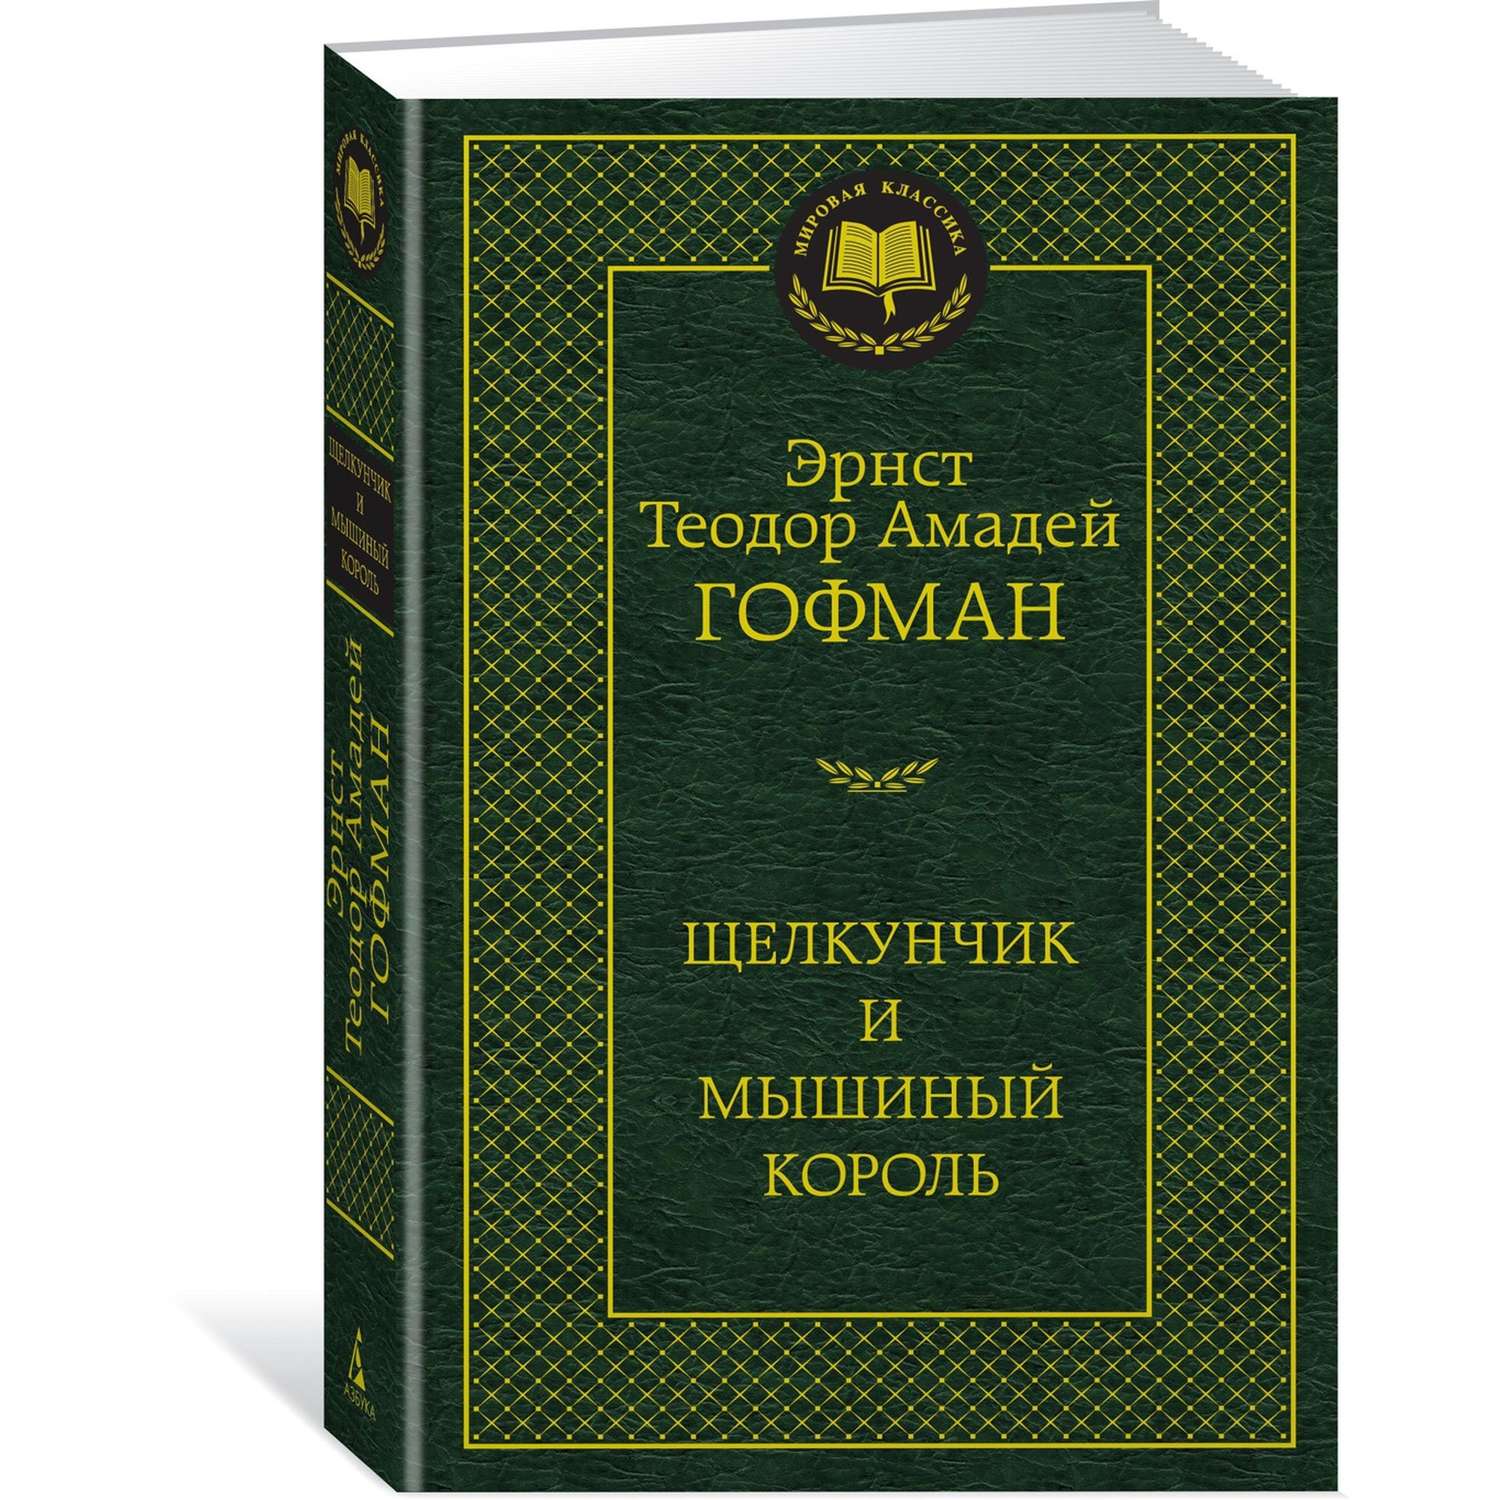 Книга Щелкунчик и мышиный король Мировая классика Эрнст Теодор Амадей Гофман - фото 2